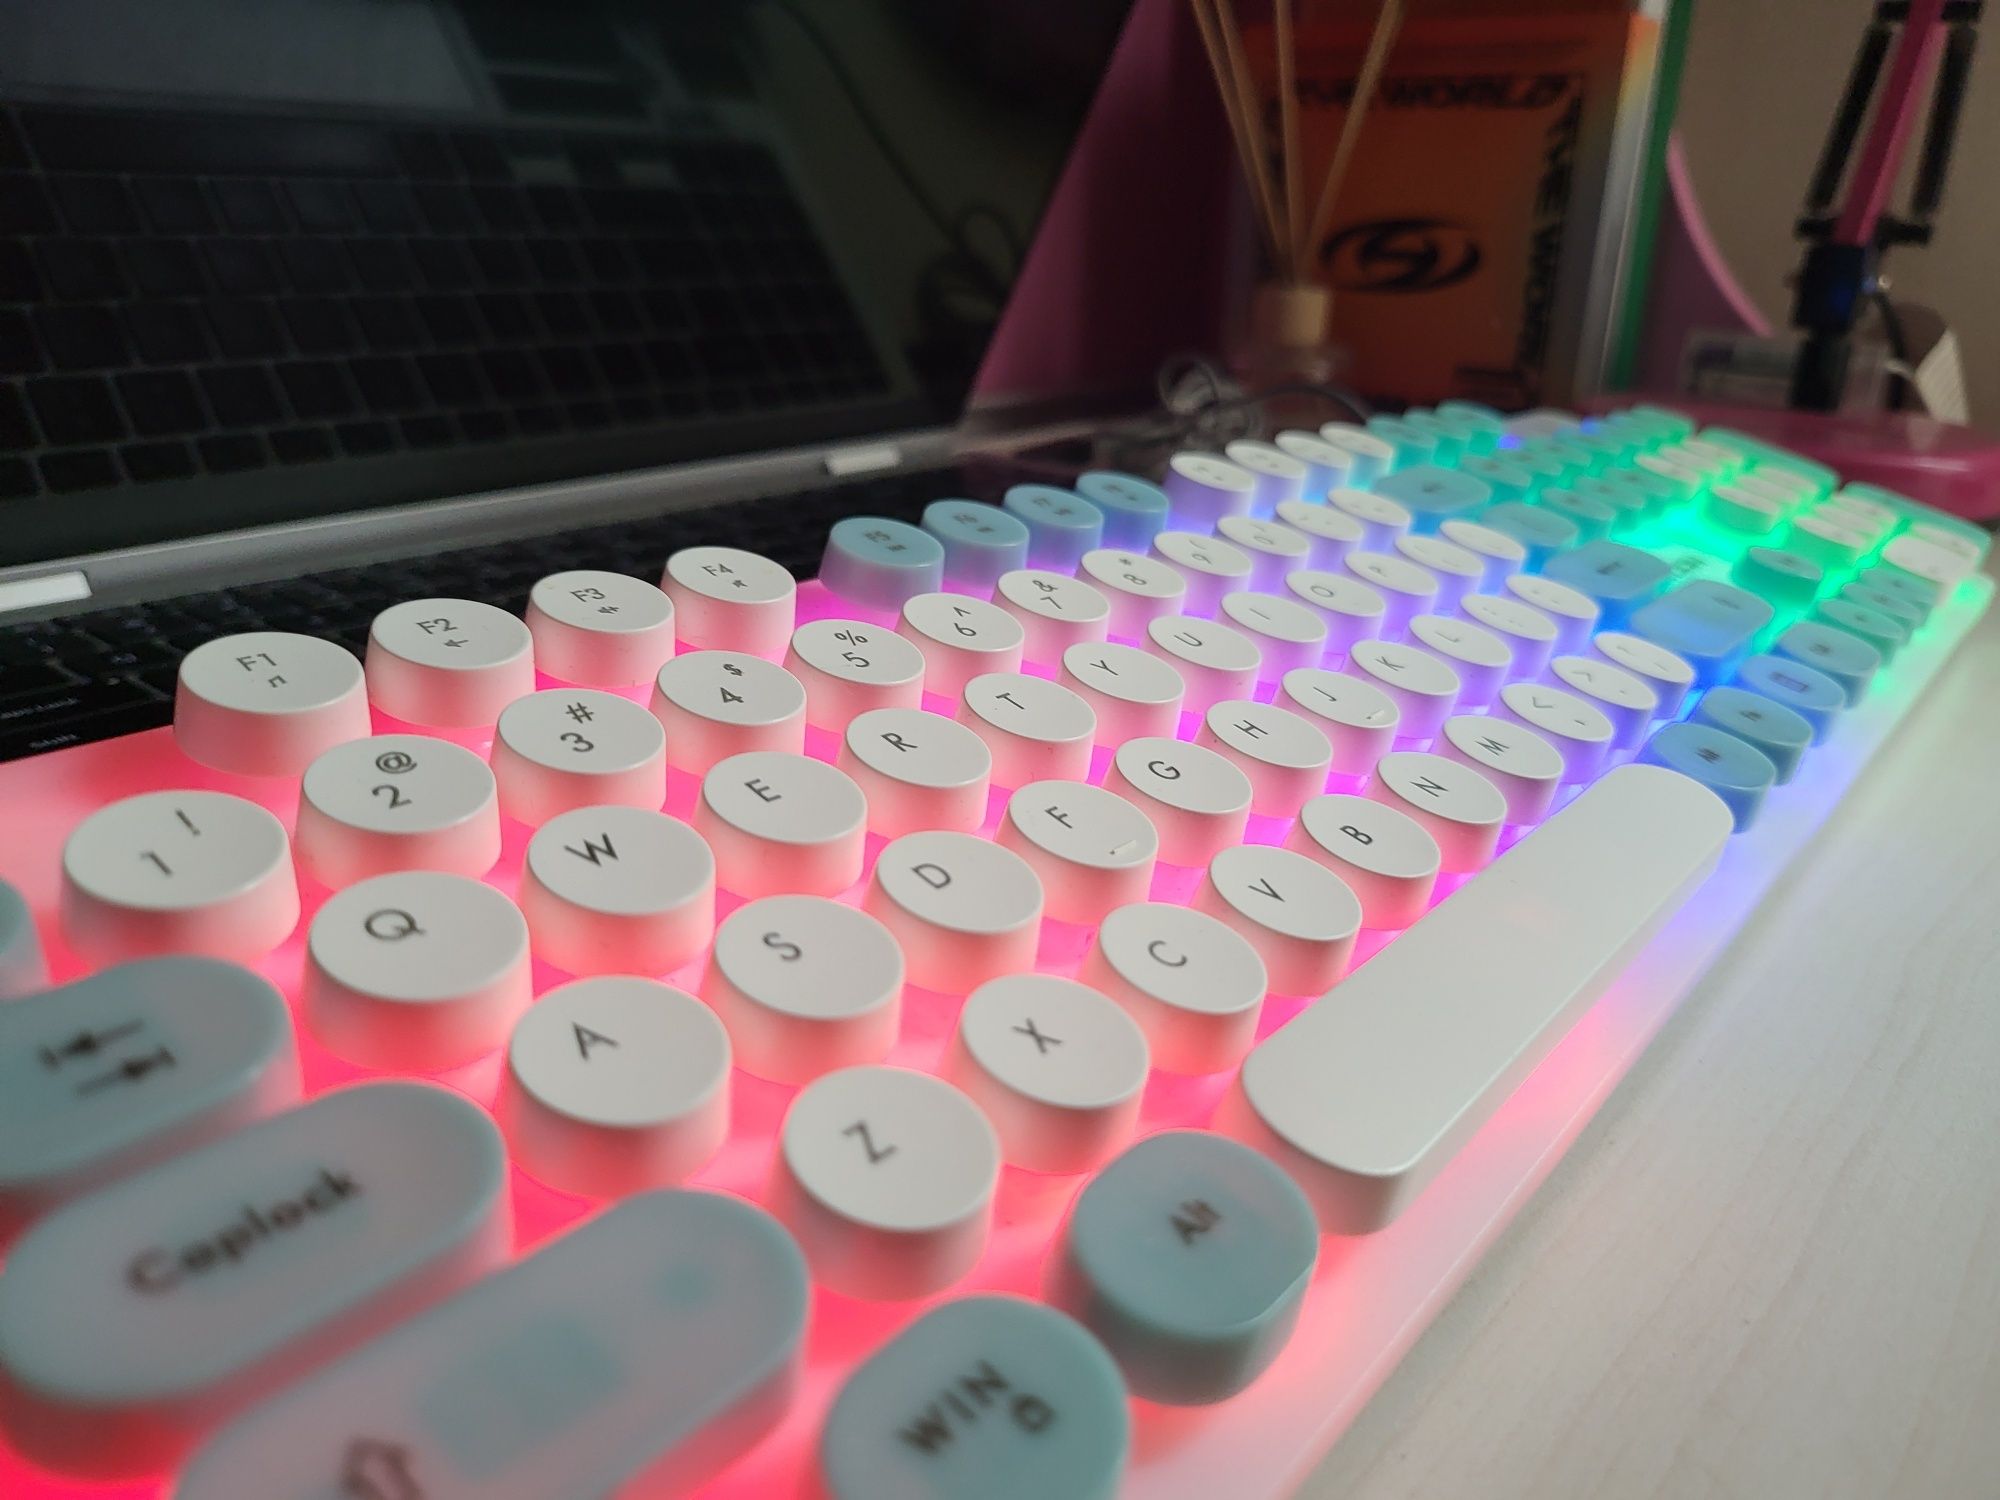 Механічна клавіатура з RGB підсвіткою SkyLion H-300 Punk